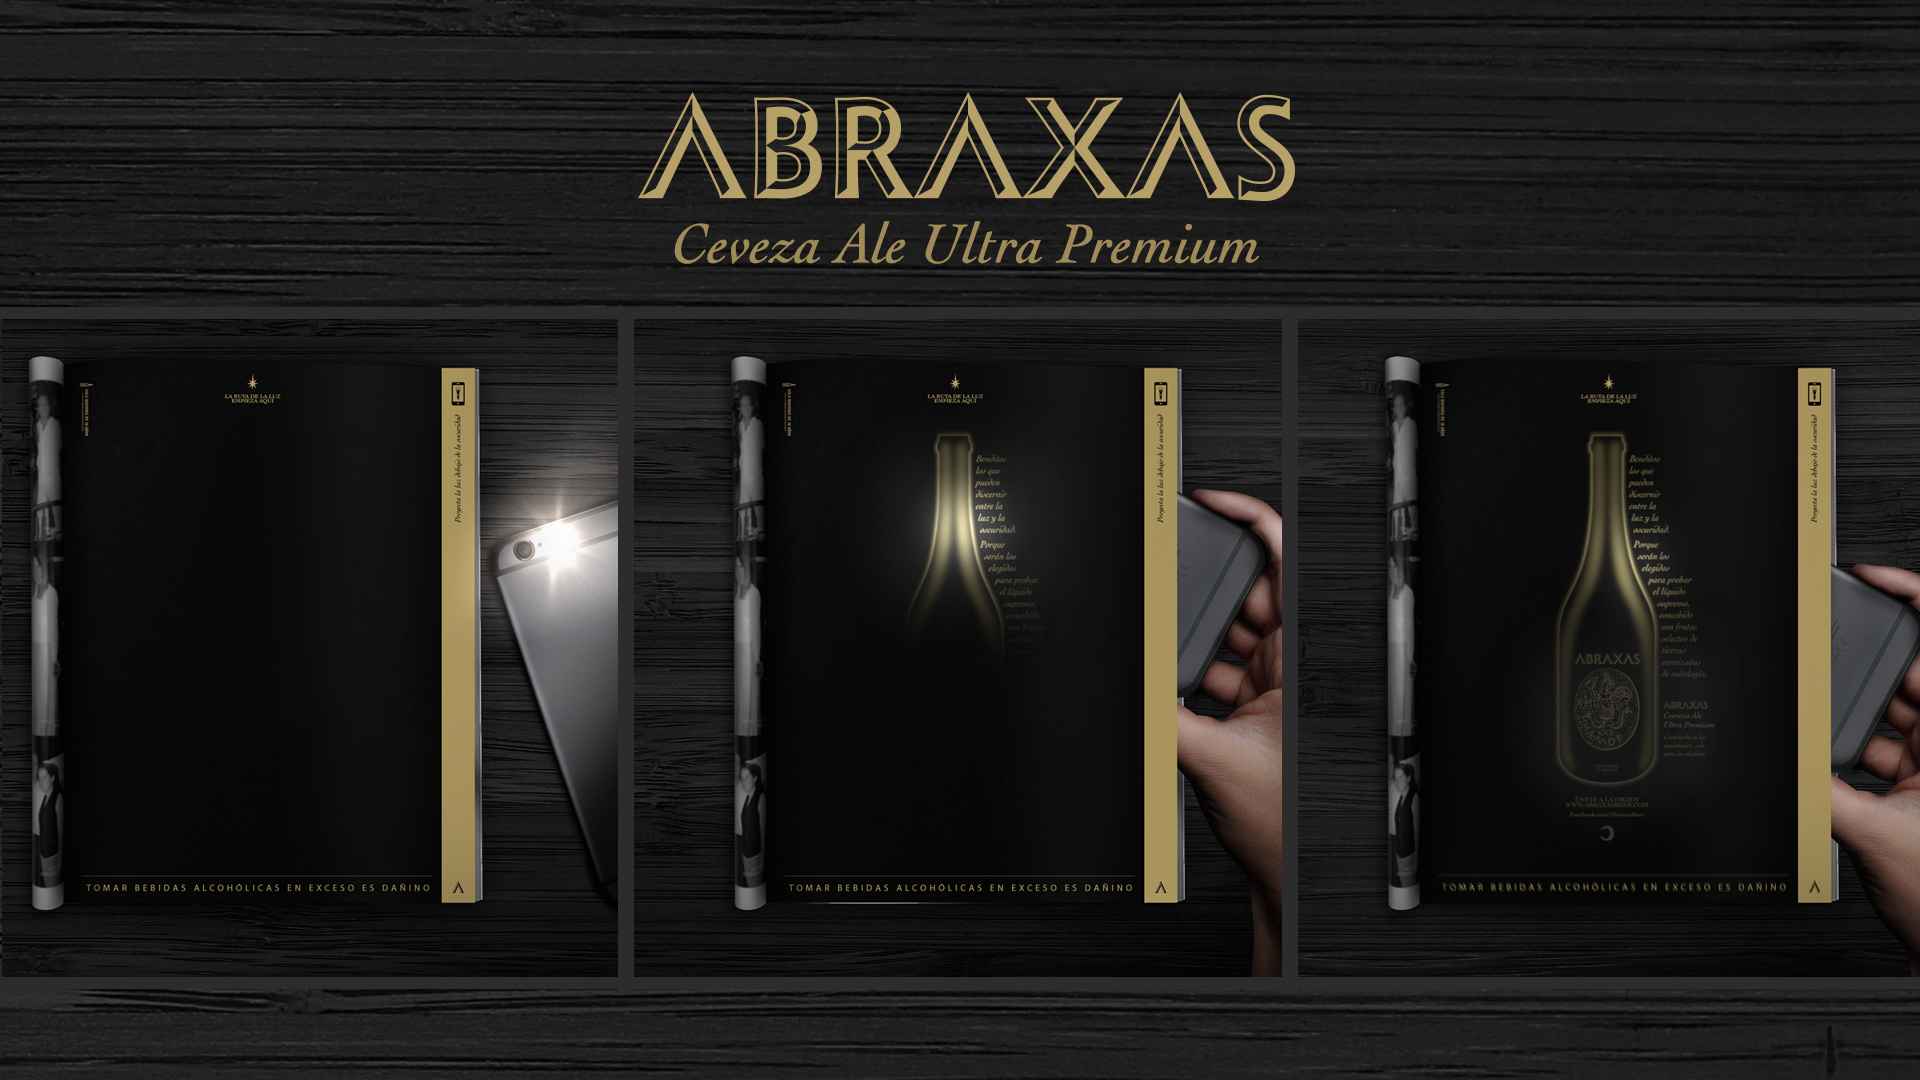 Portada de Wunderman Phantasia de Perú crea un print interactivo para el lanzamiento de Abraxas